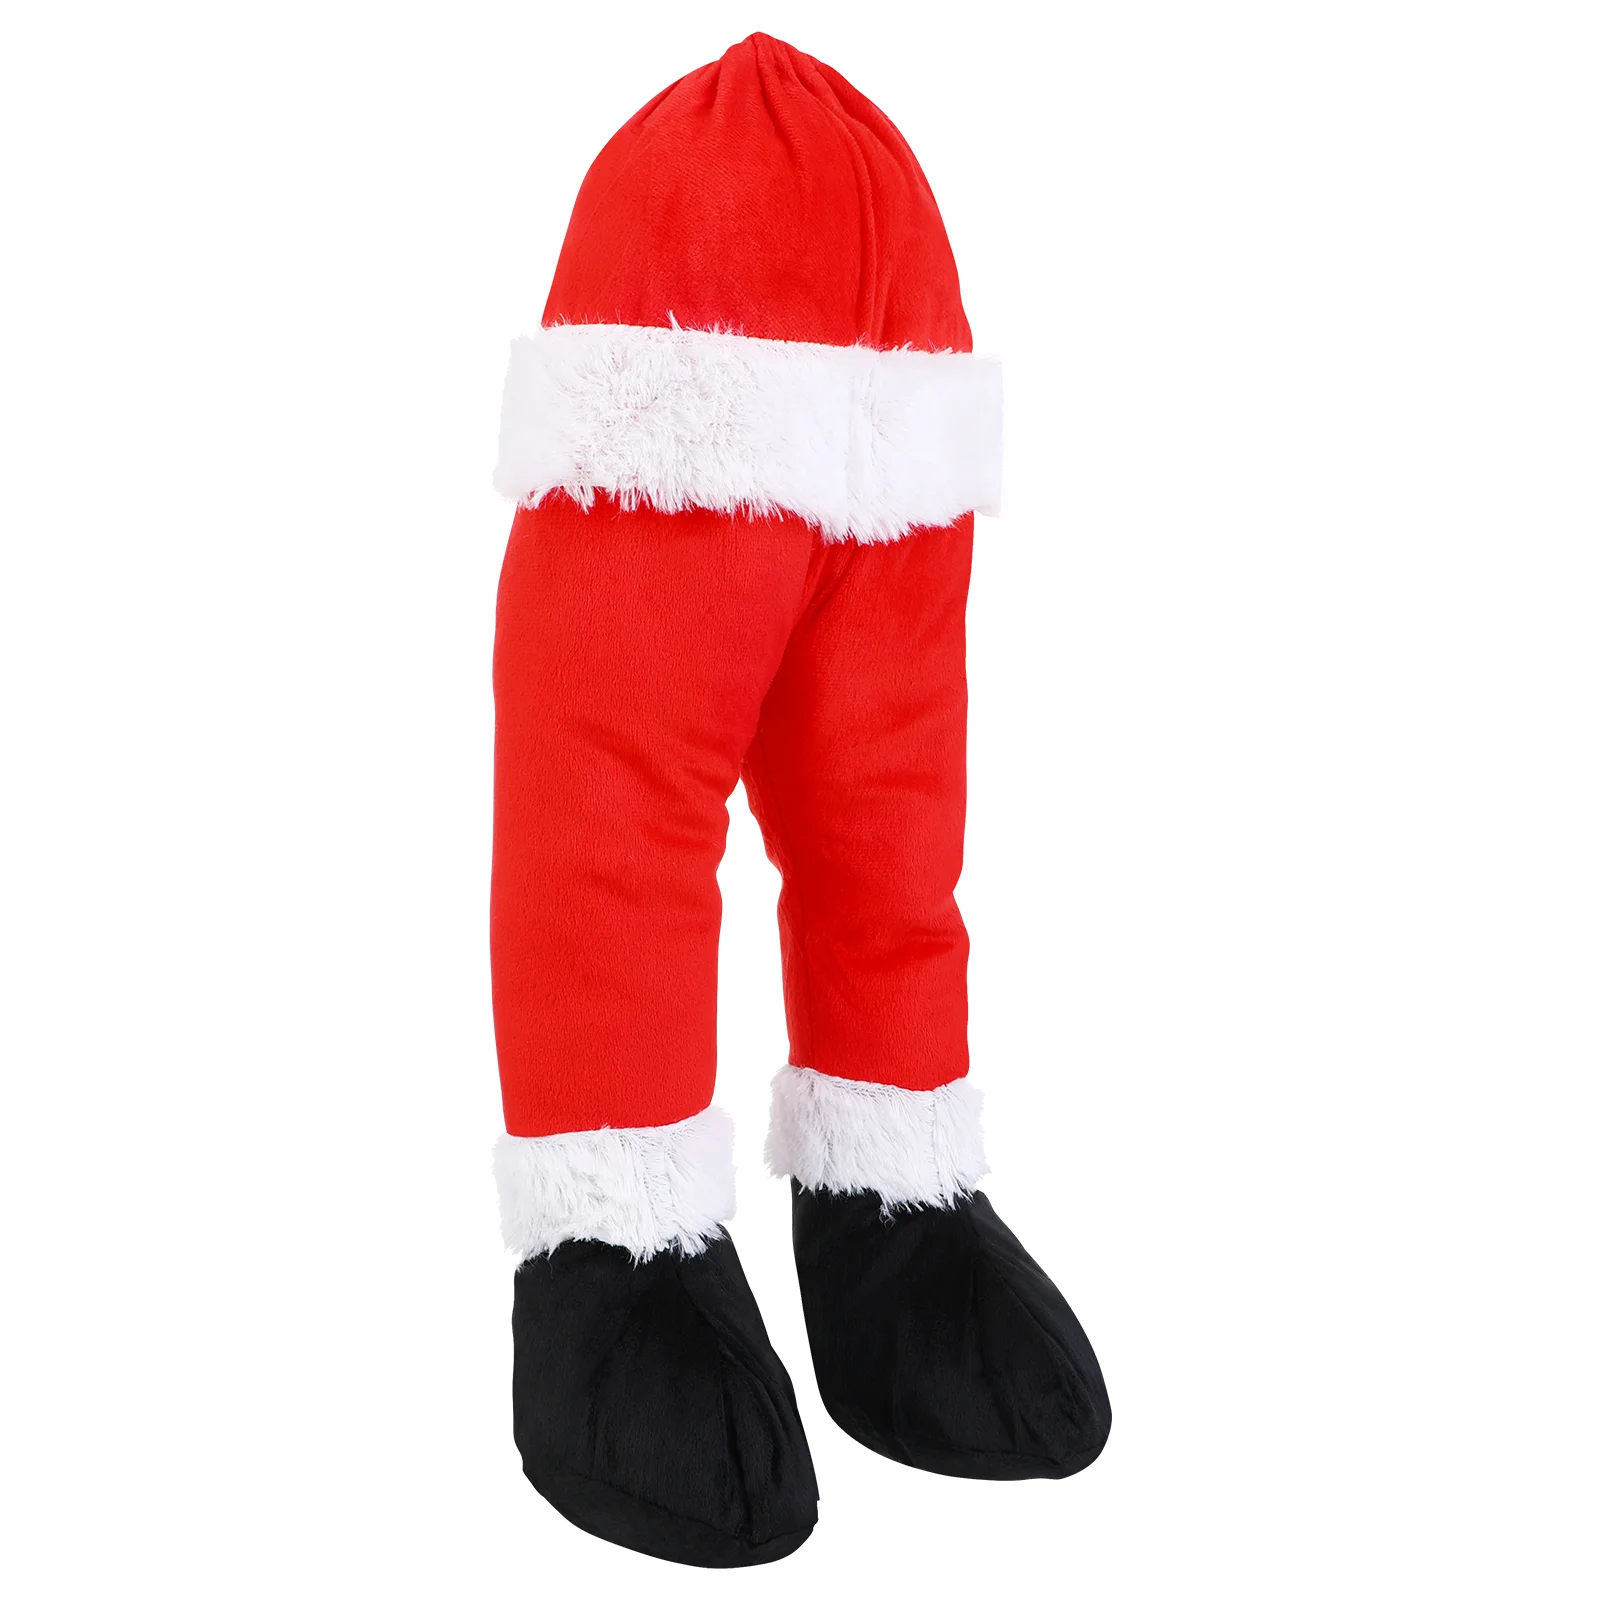 Рождественские украшения, Рождественские ножки Санта Клауса, застрявший верх из елки, дизайн поддельных ножек, Рождественский орнамент, декор Рождественской елки - 3